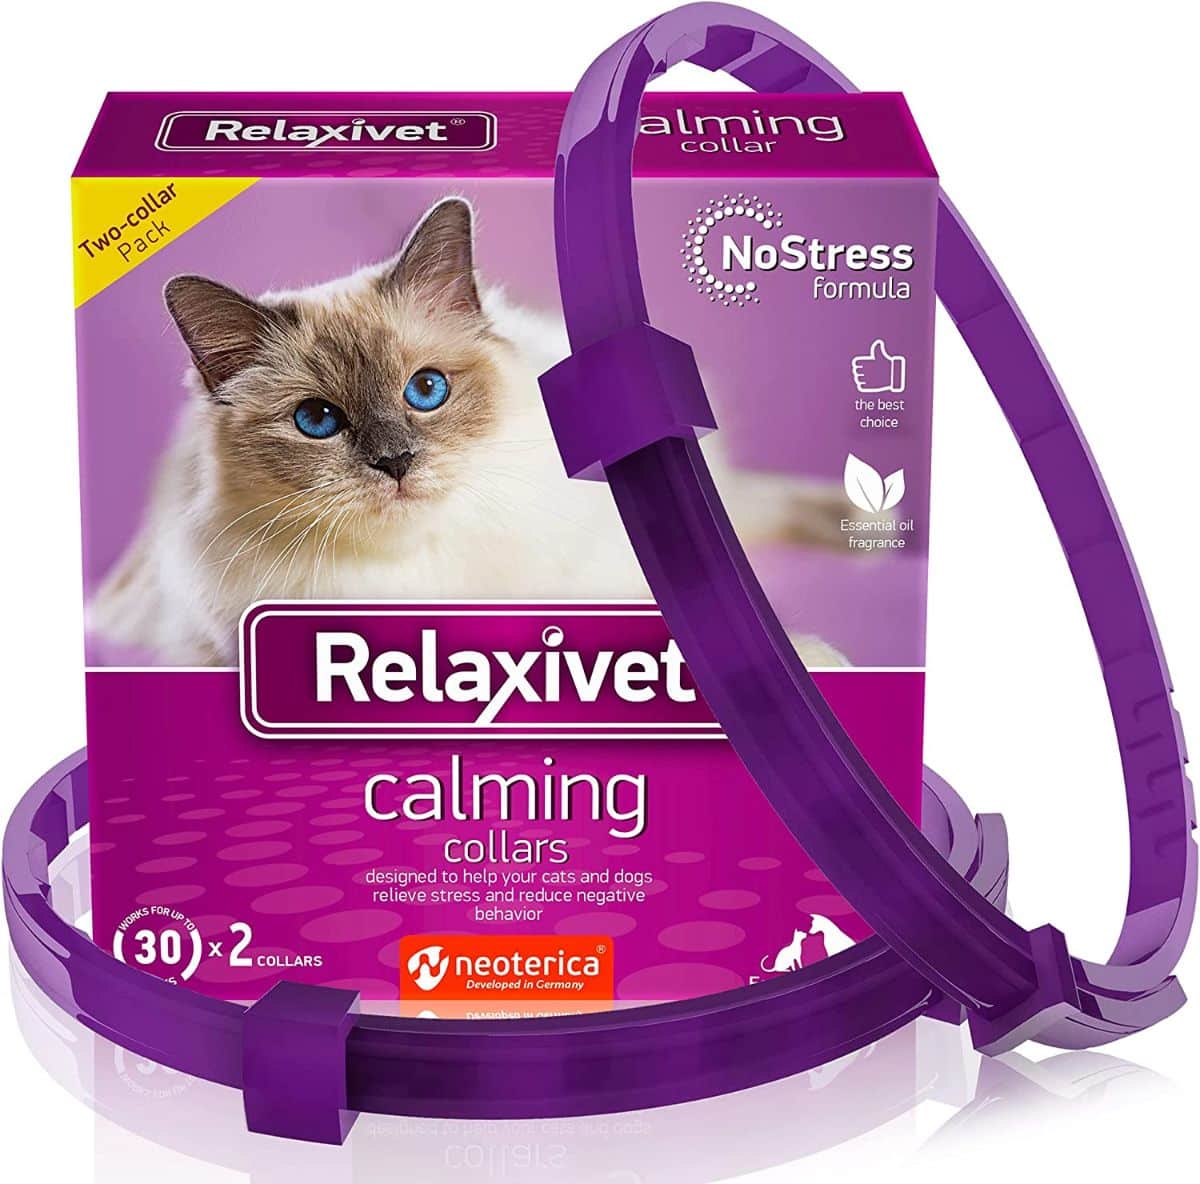 Relaxivet Cat Calming Collar